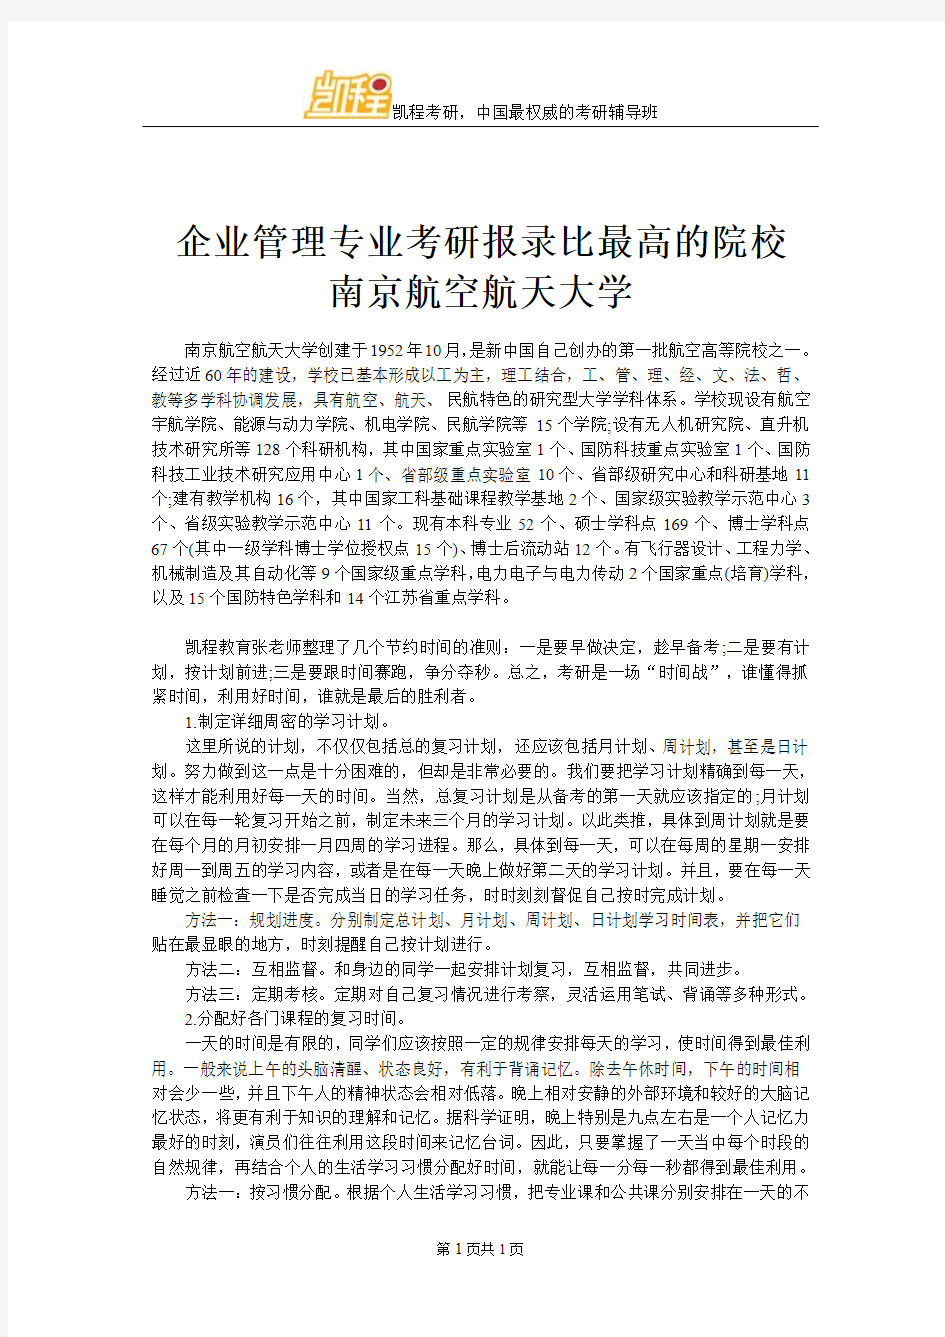 企业管理专业考研报录比最高的院校 南京航空航天大学